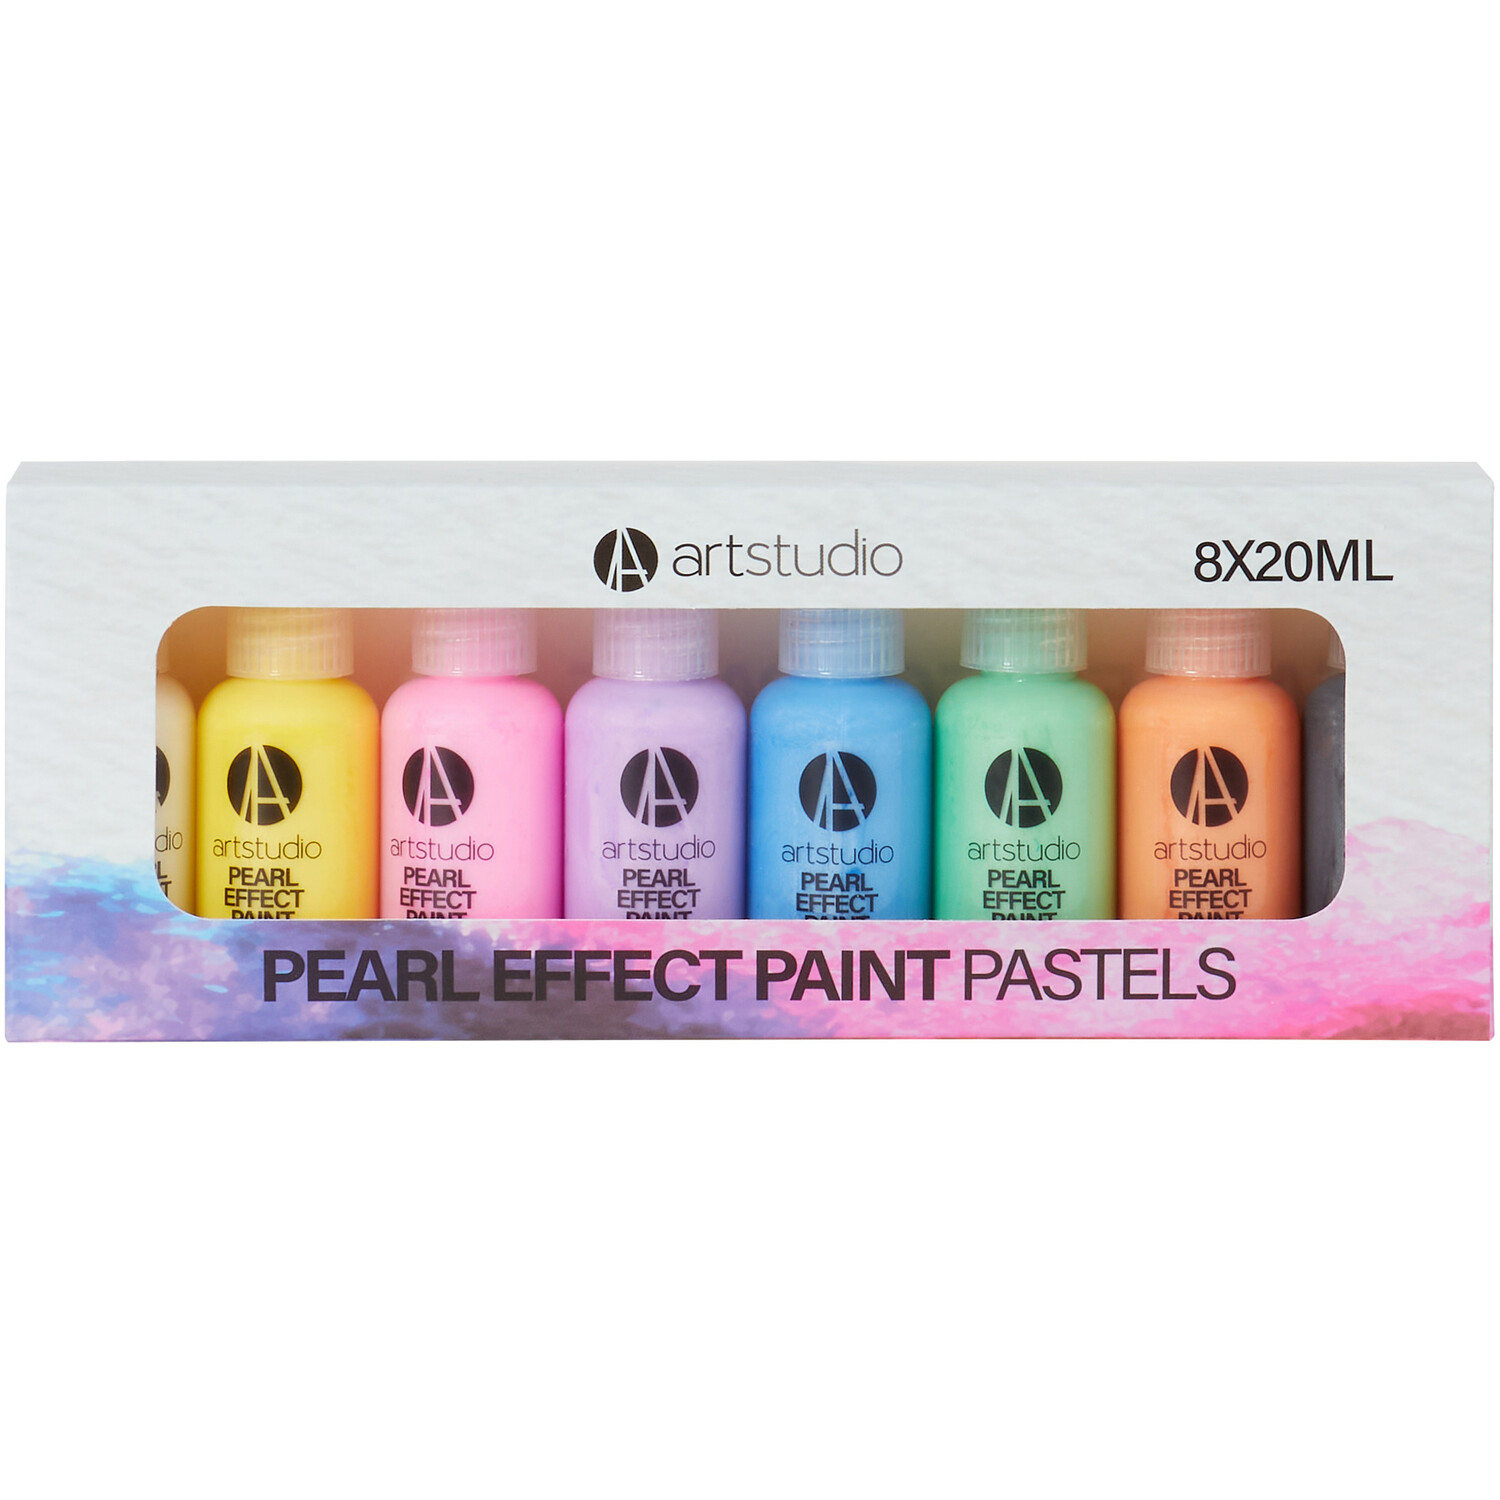 Art Studio Pearl Effect Paint - Pastels Image 1